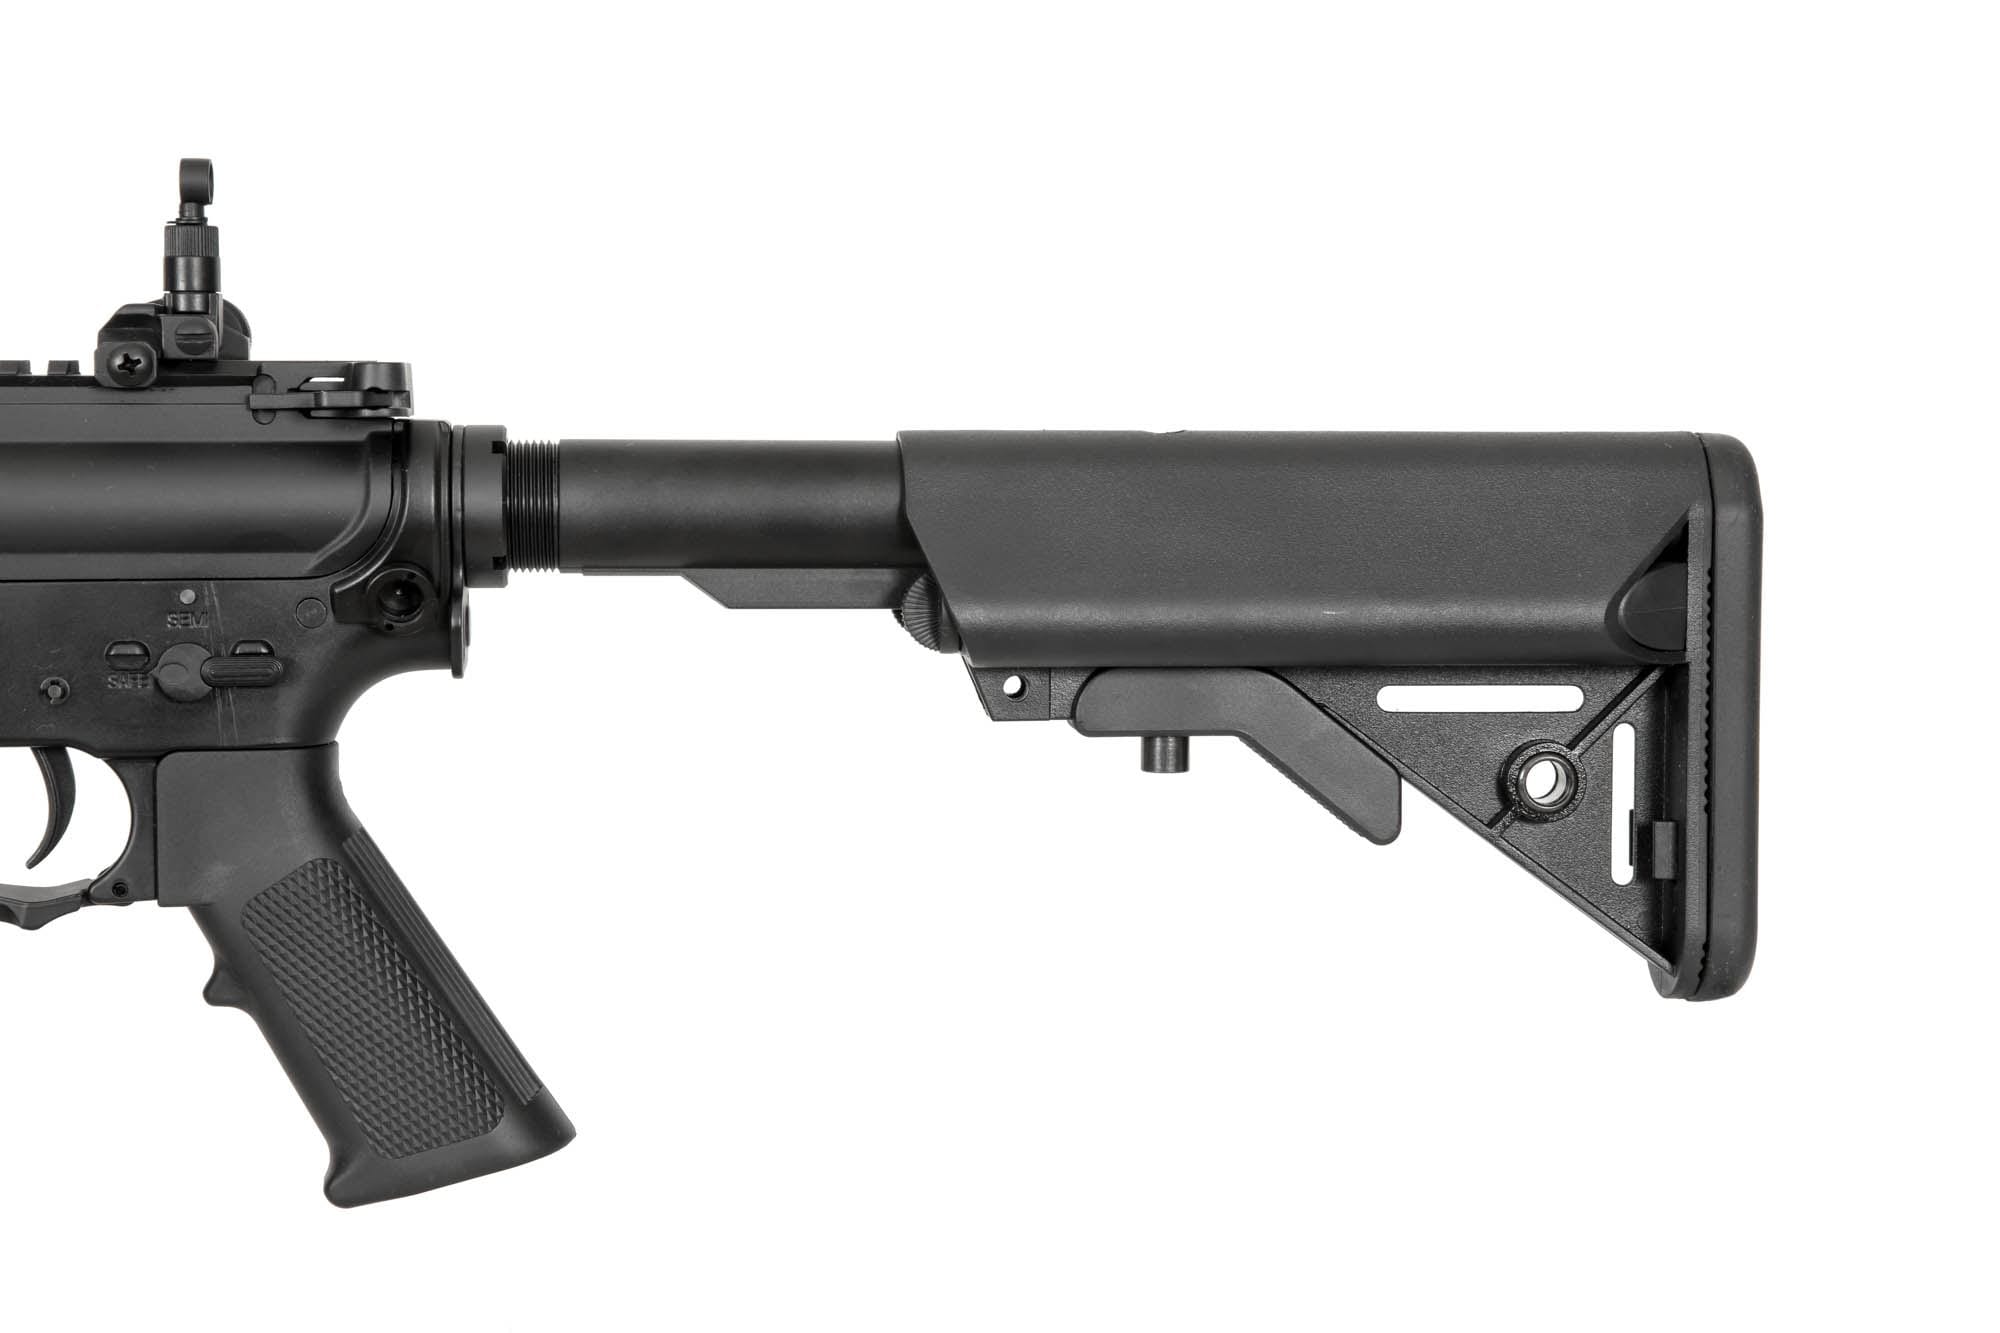 SW-023-A11 Carbine Replica